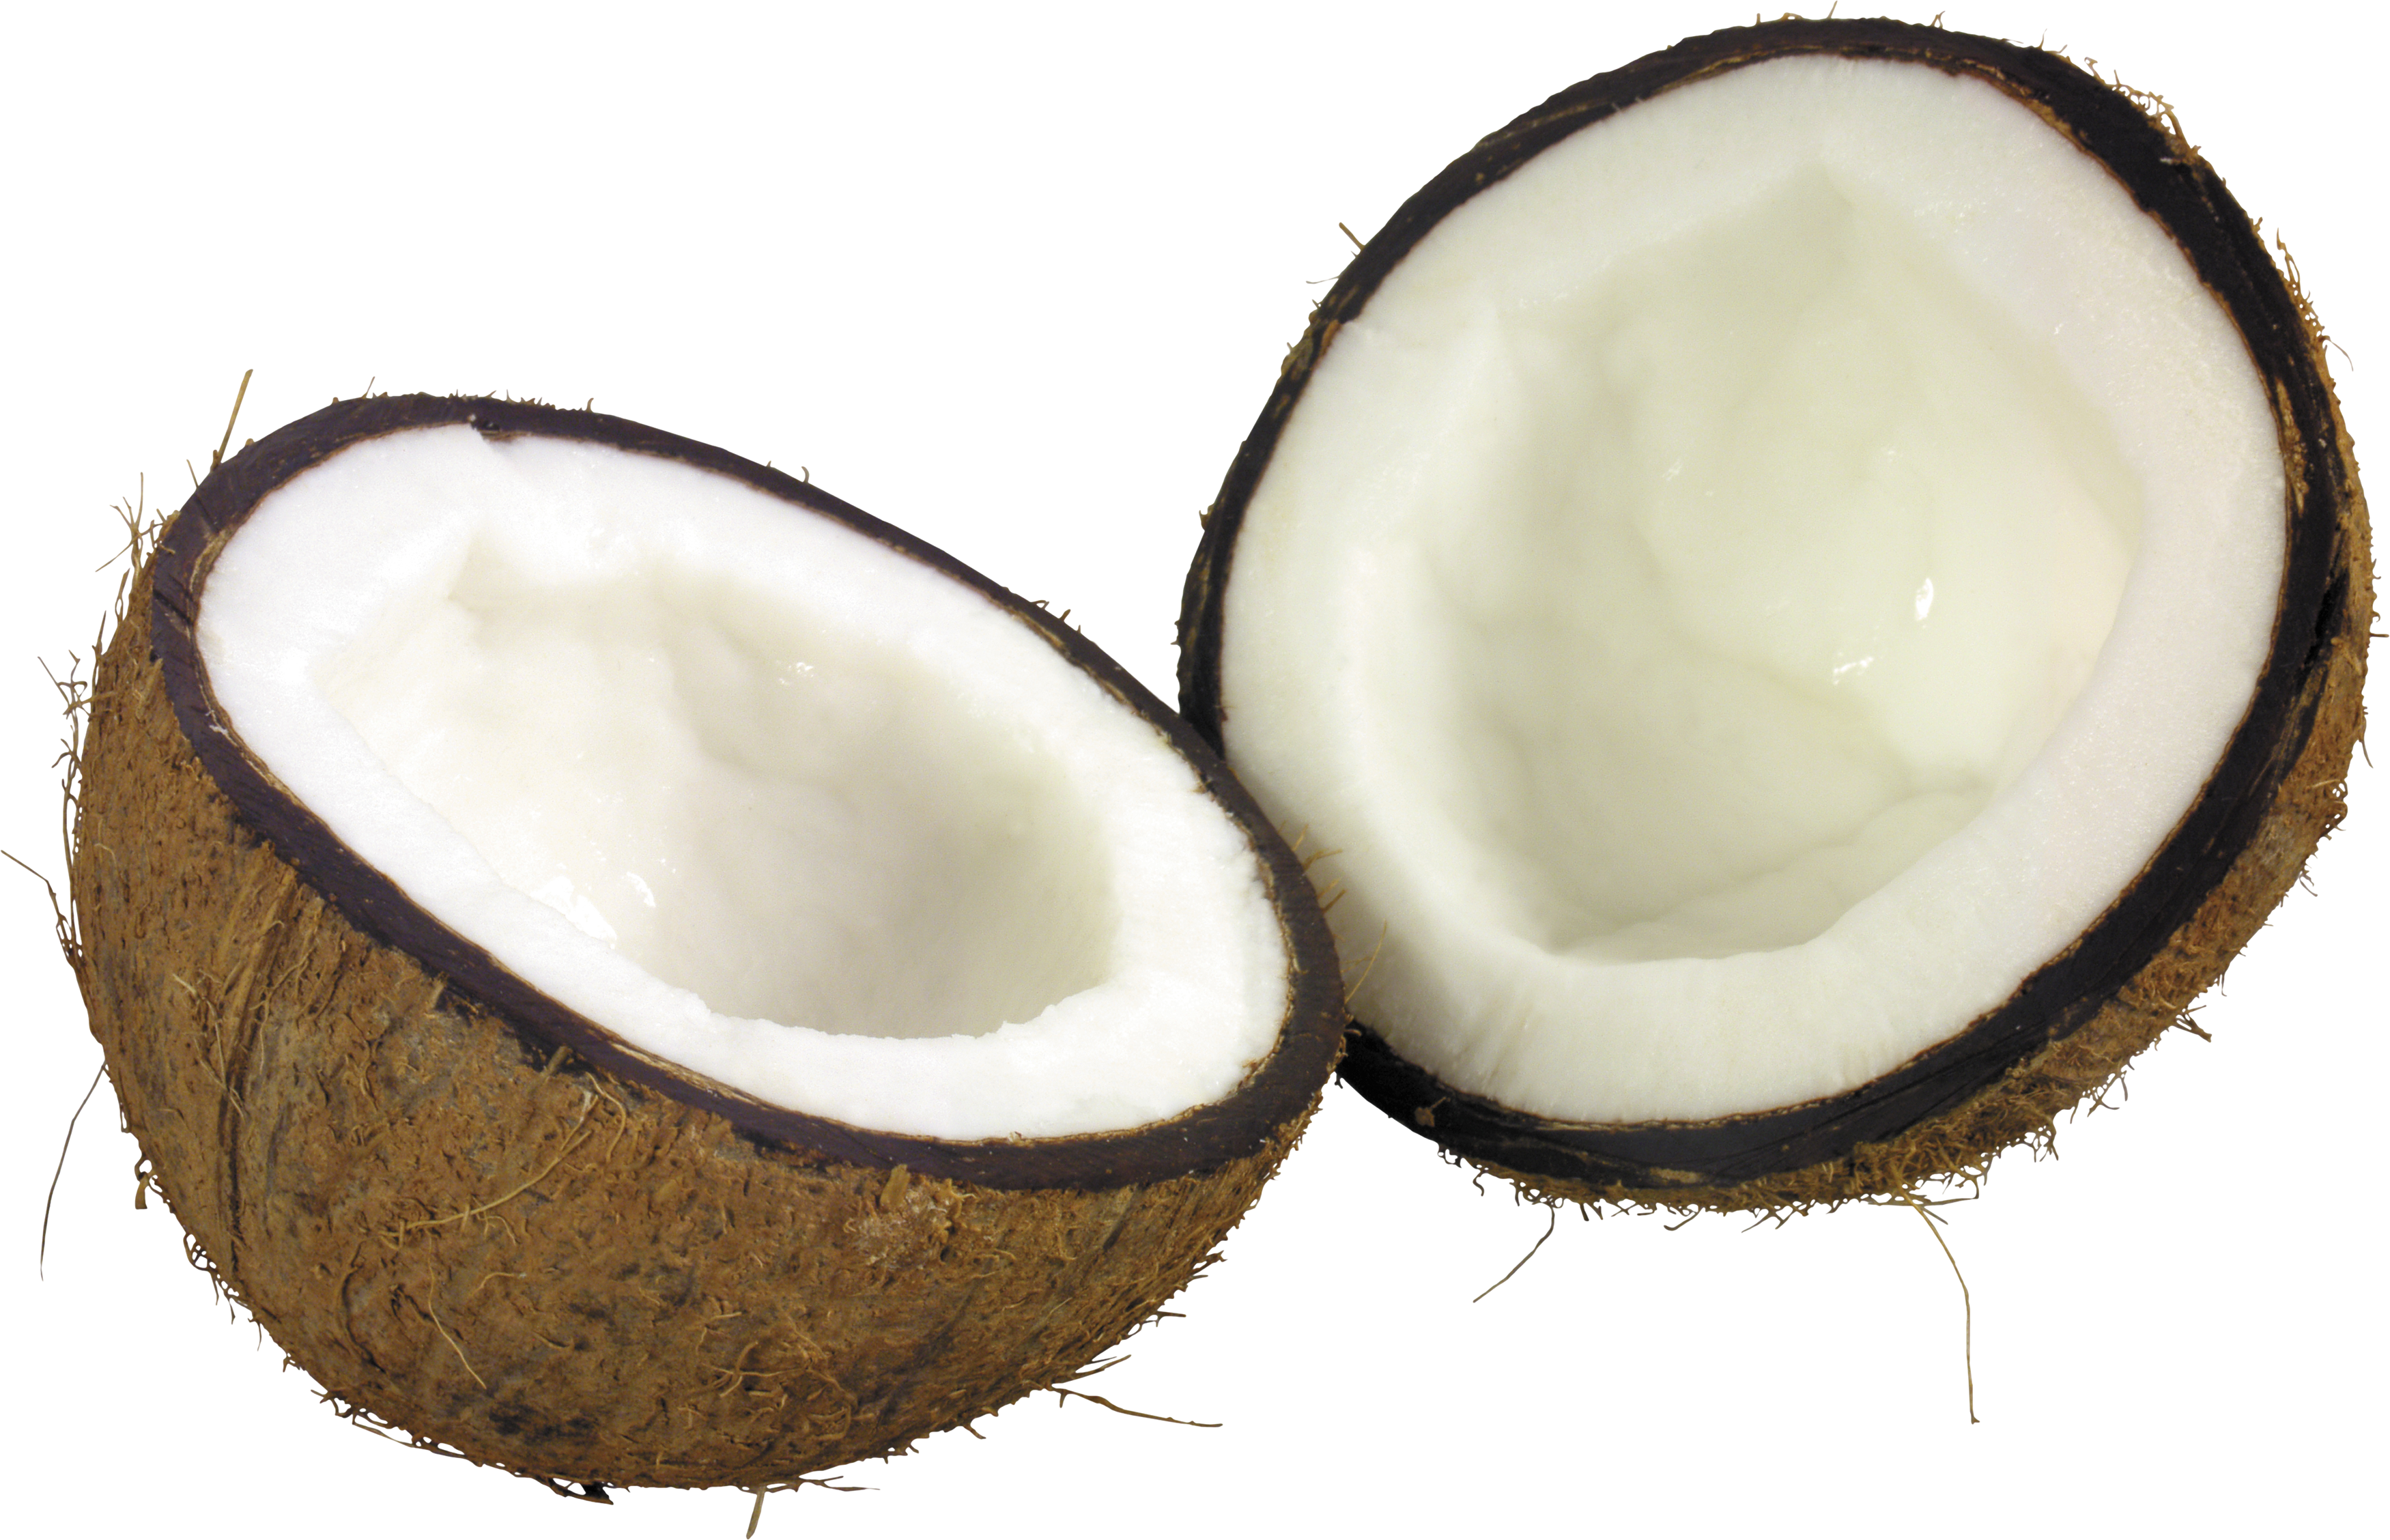 Половина вырезанного кокоса PNG изображения фона